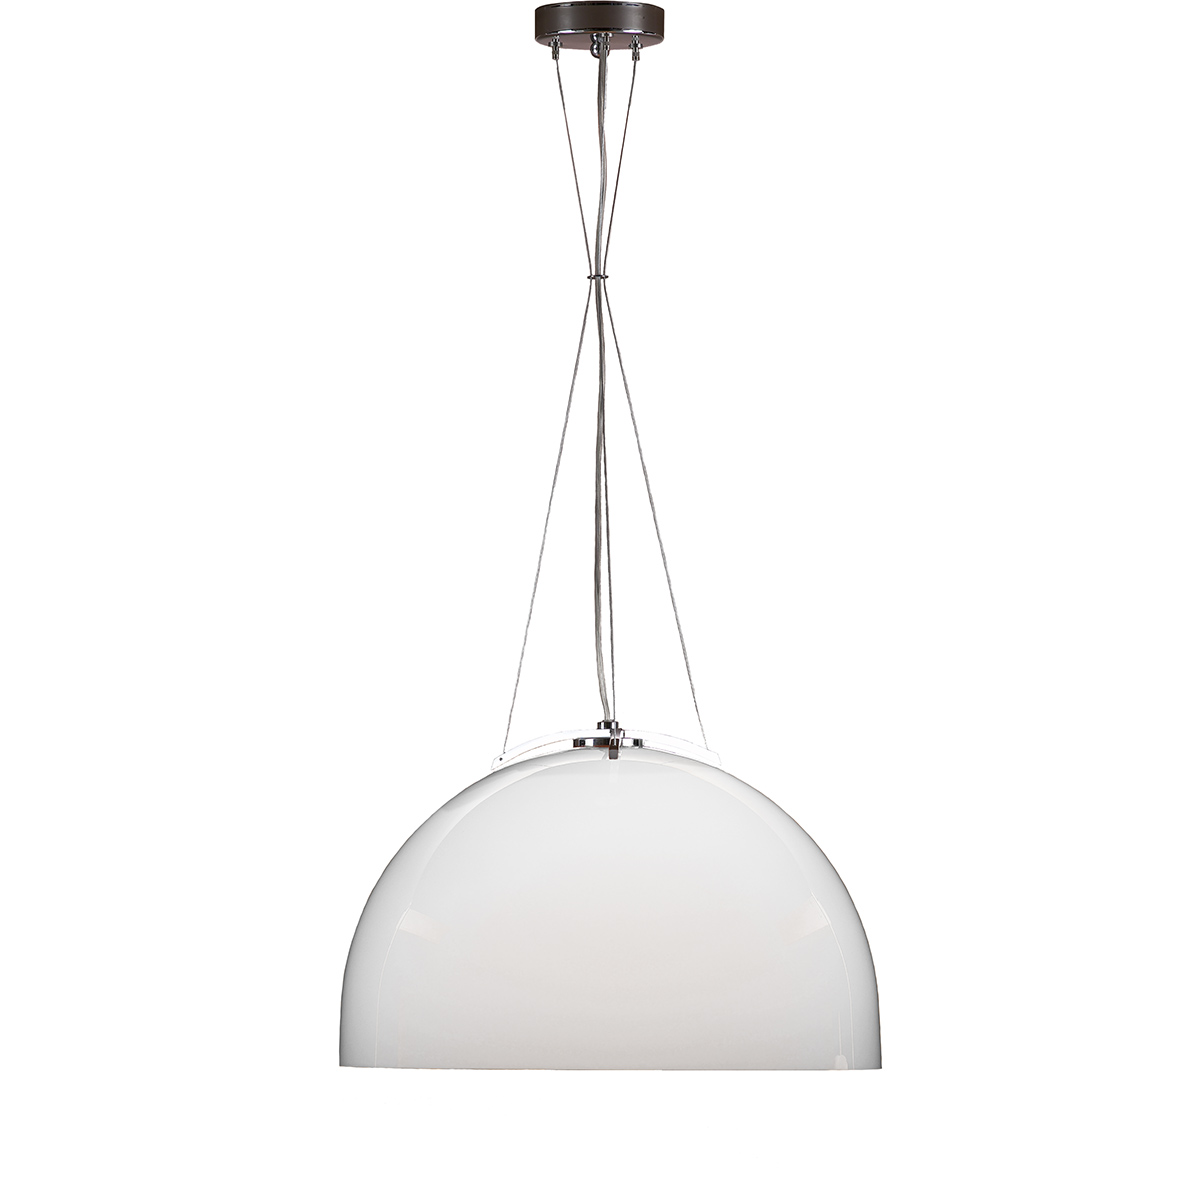 Μοντέρνο φωτιστικό Μουράνο λευκό MARS modern white Murano suspension lamp